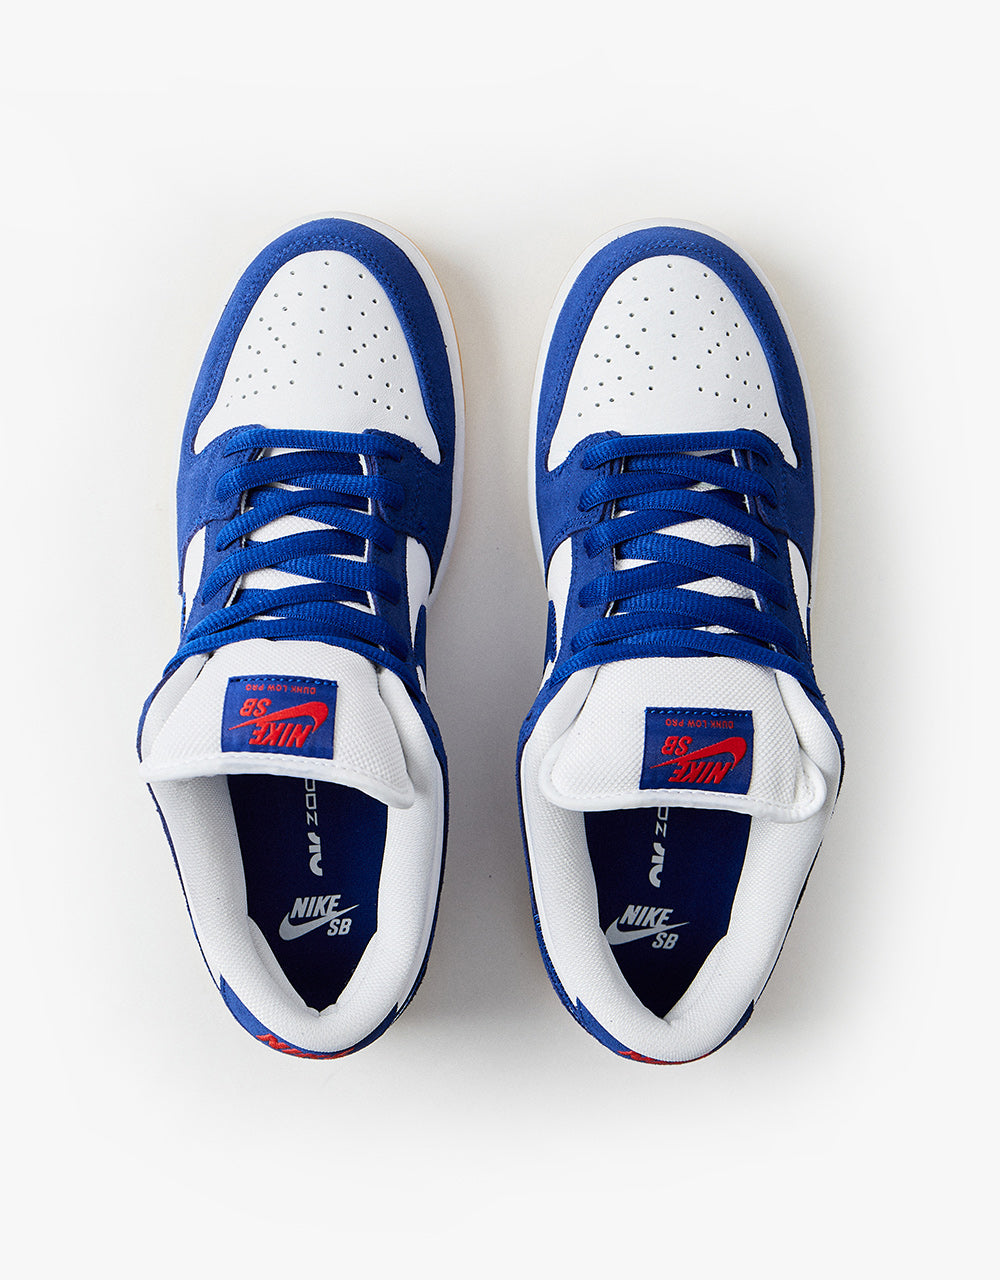 Nike SB 'Dodgers' Dunk Low Pro Premium Skate Shoes - Deep Royal Blue/D –  Route One Launches